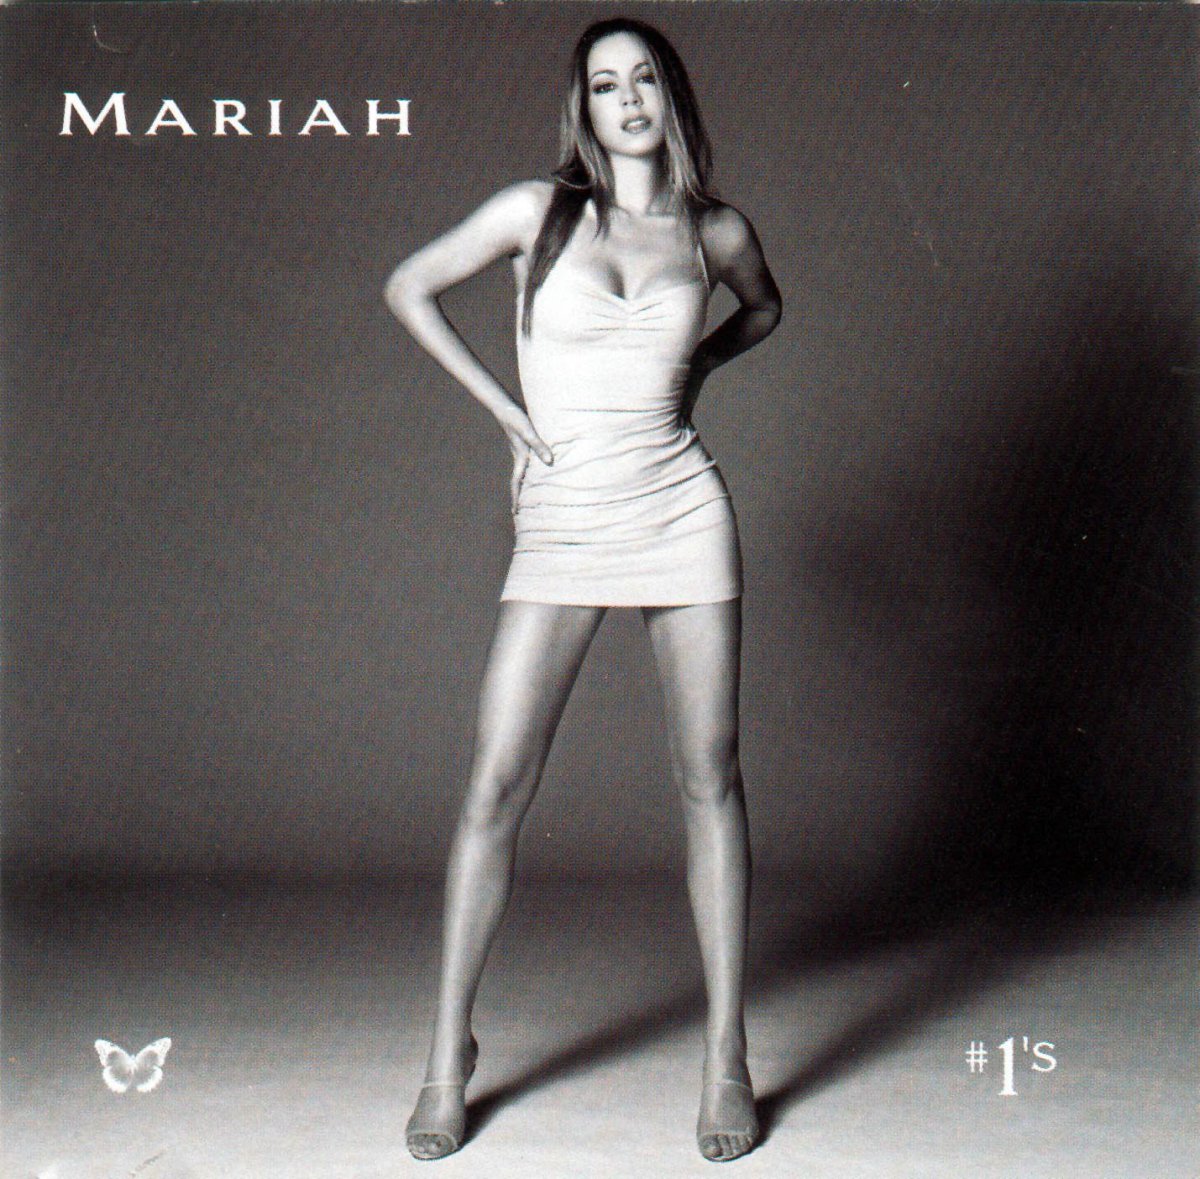 Mariah Carey - #1s